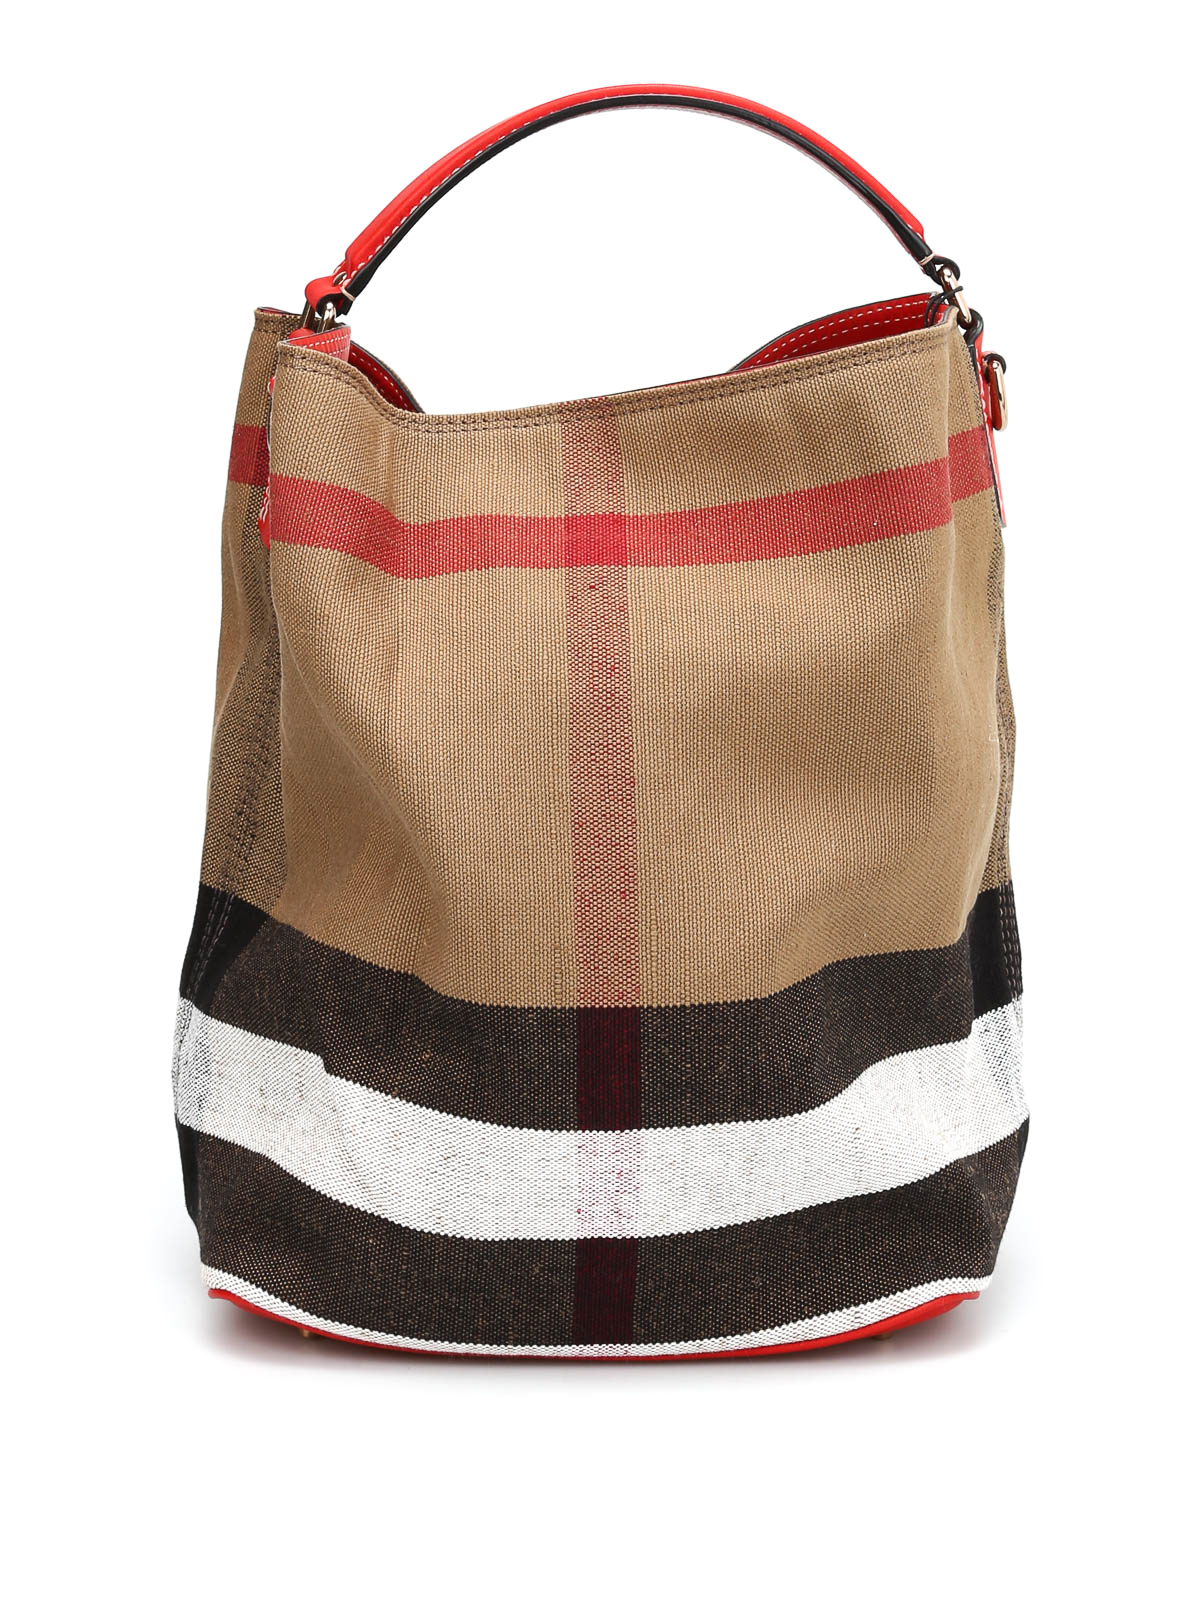 Burberry - Susanna canvas check hobo bag - Bucket bags - 3945728